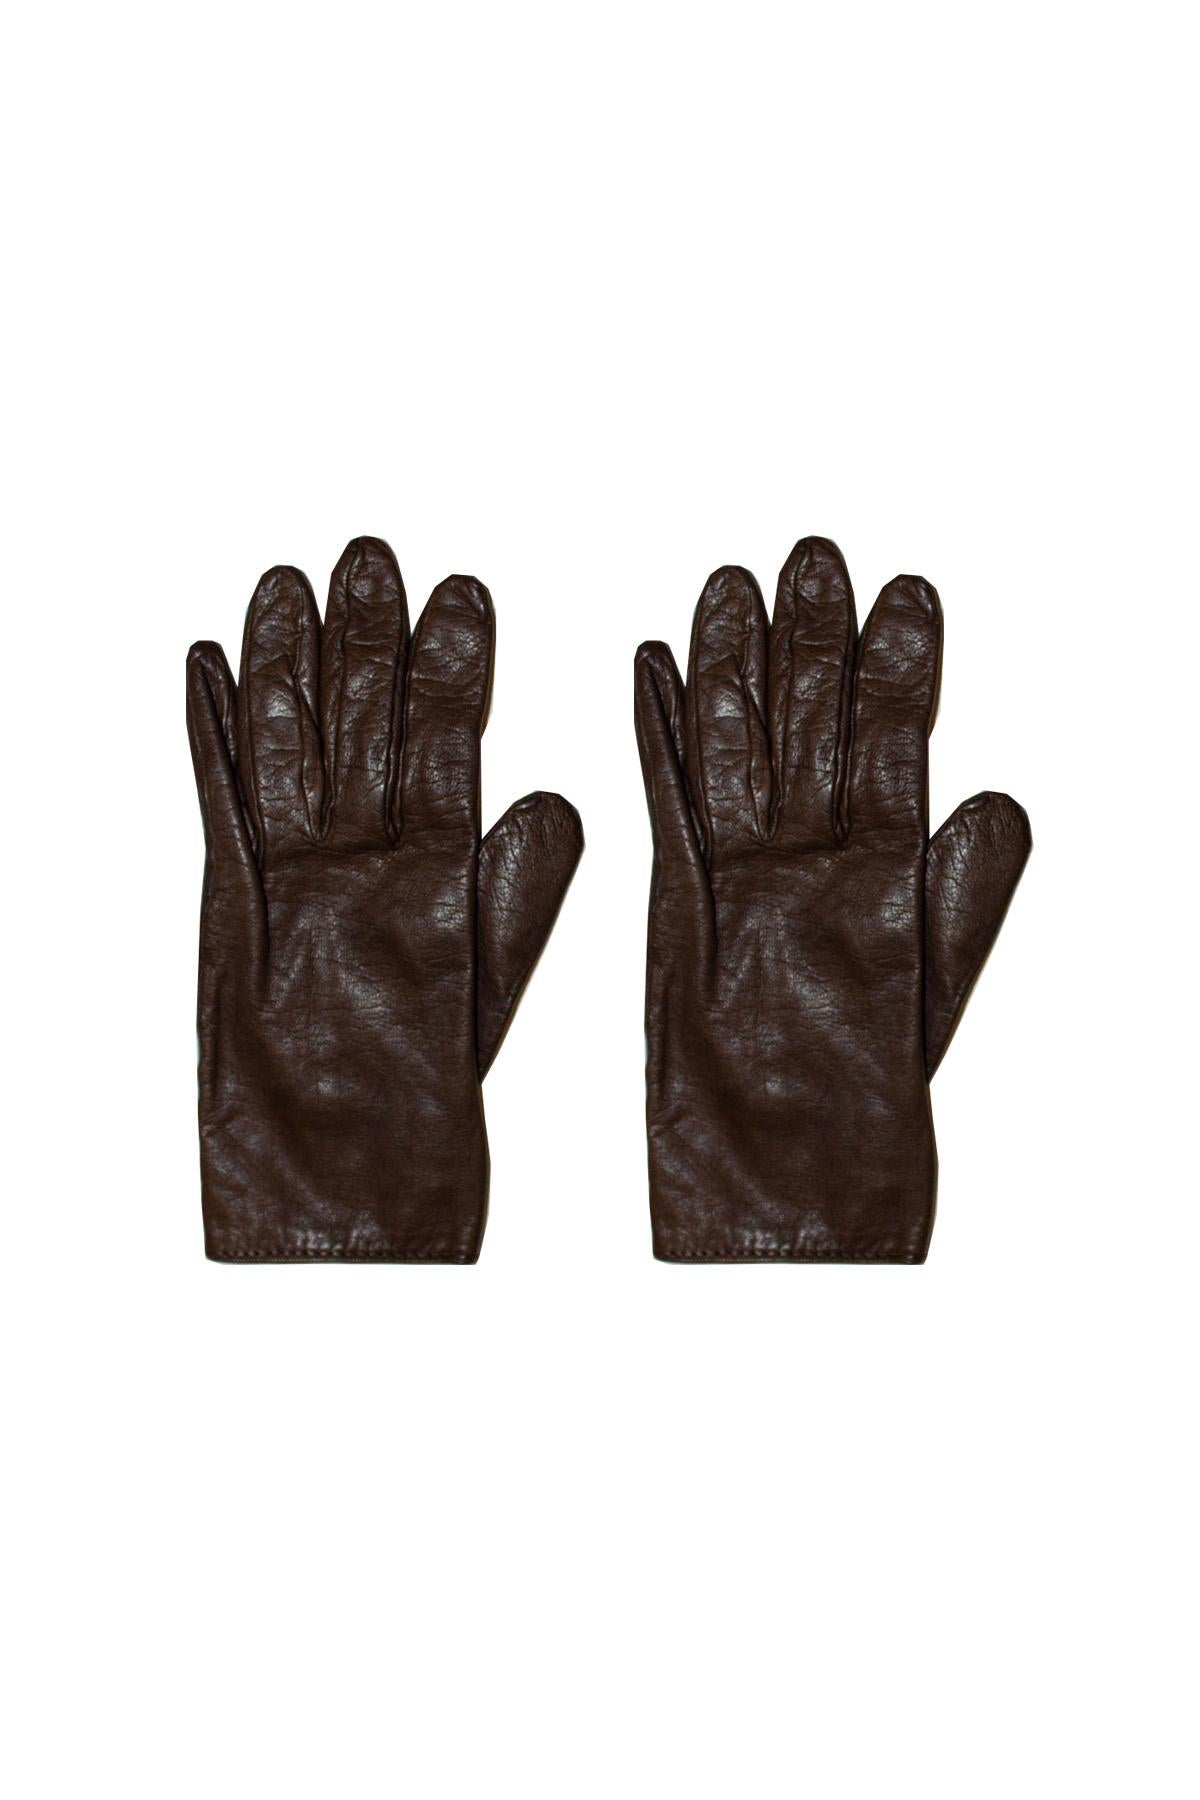 Vintage Hermes Leather Gloves For Sale 1